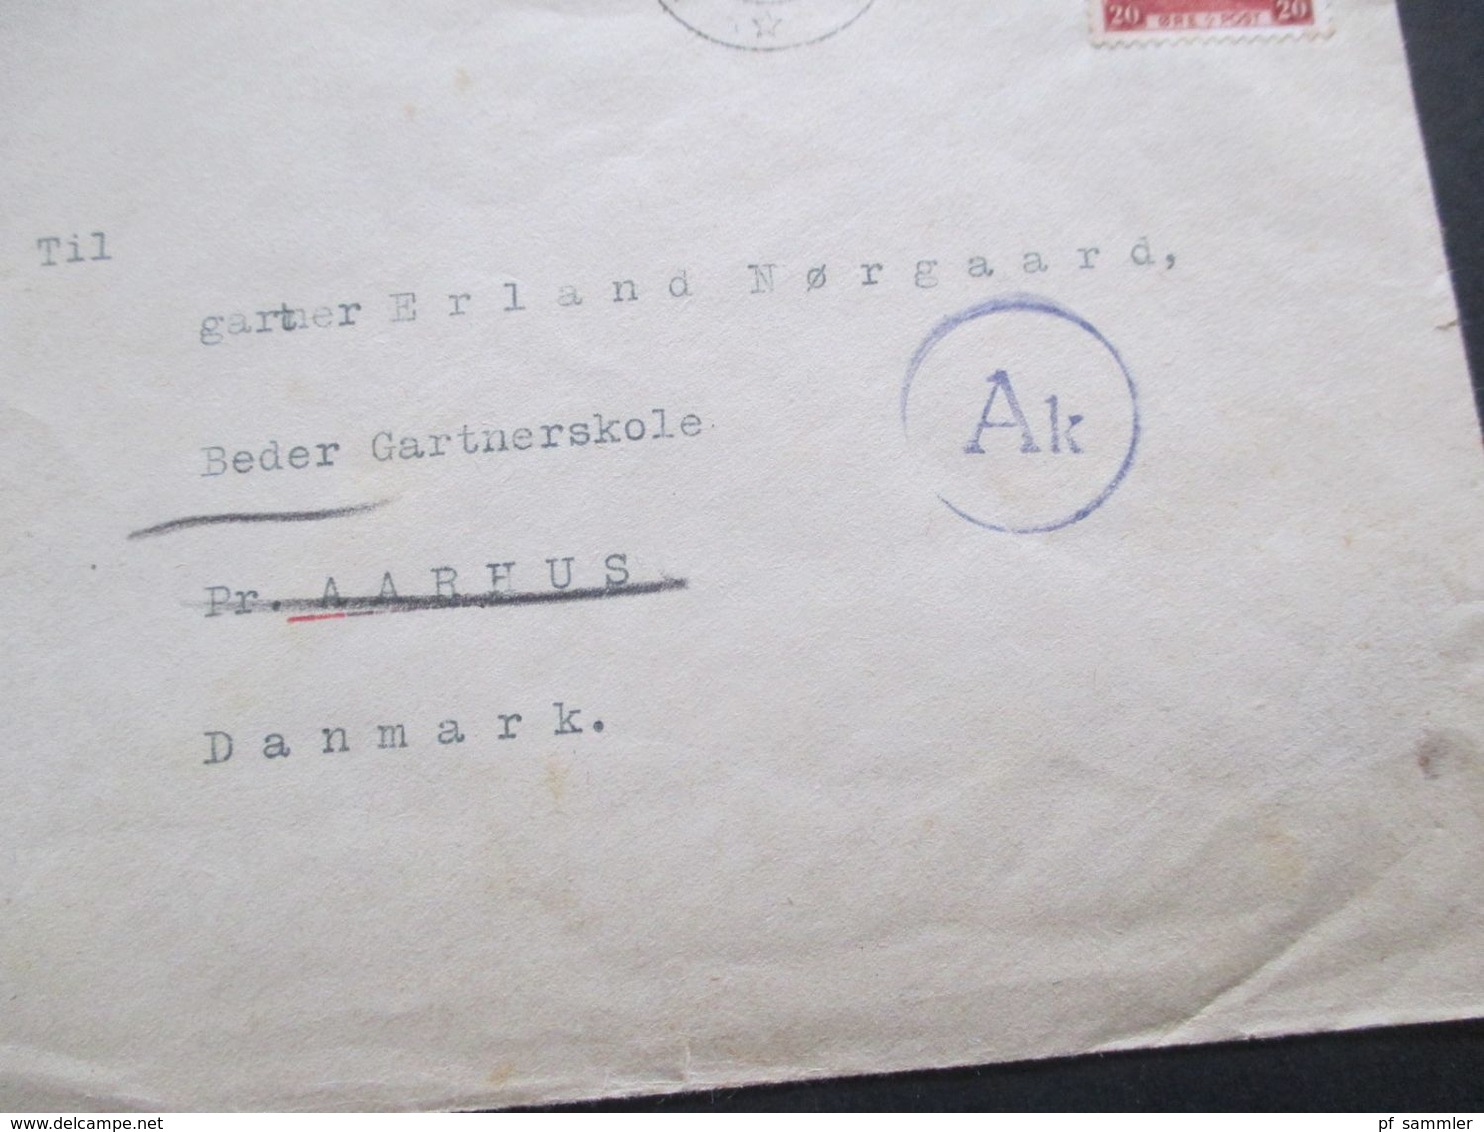 Dänemark 1941 Brief Stempel Landbrukshogskolen Ias Innerhalb Dänemarks Mit OKW Zensur / Zensurstereifen + Stempel - Lettres & Documents